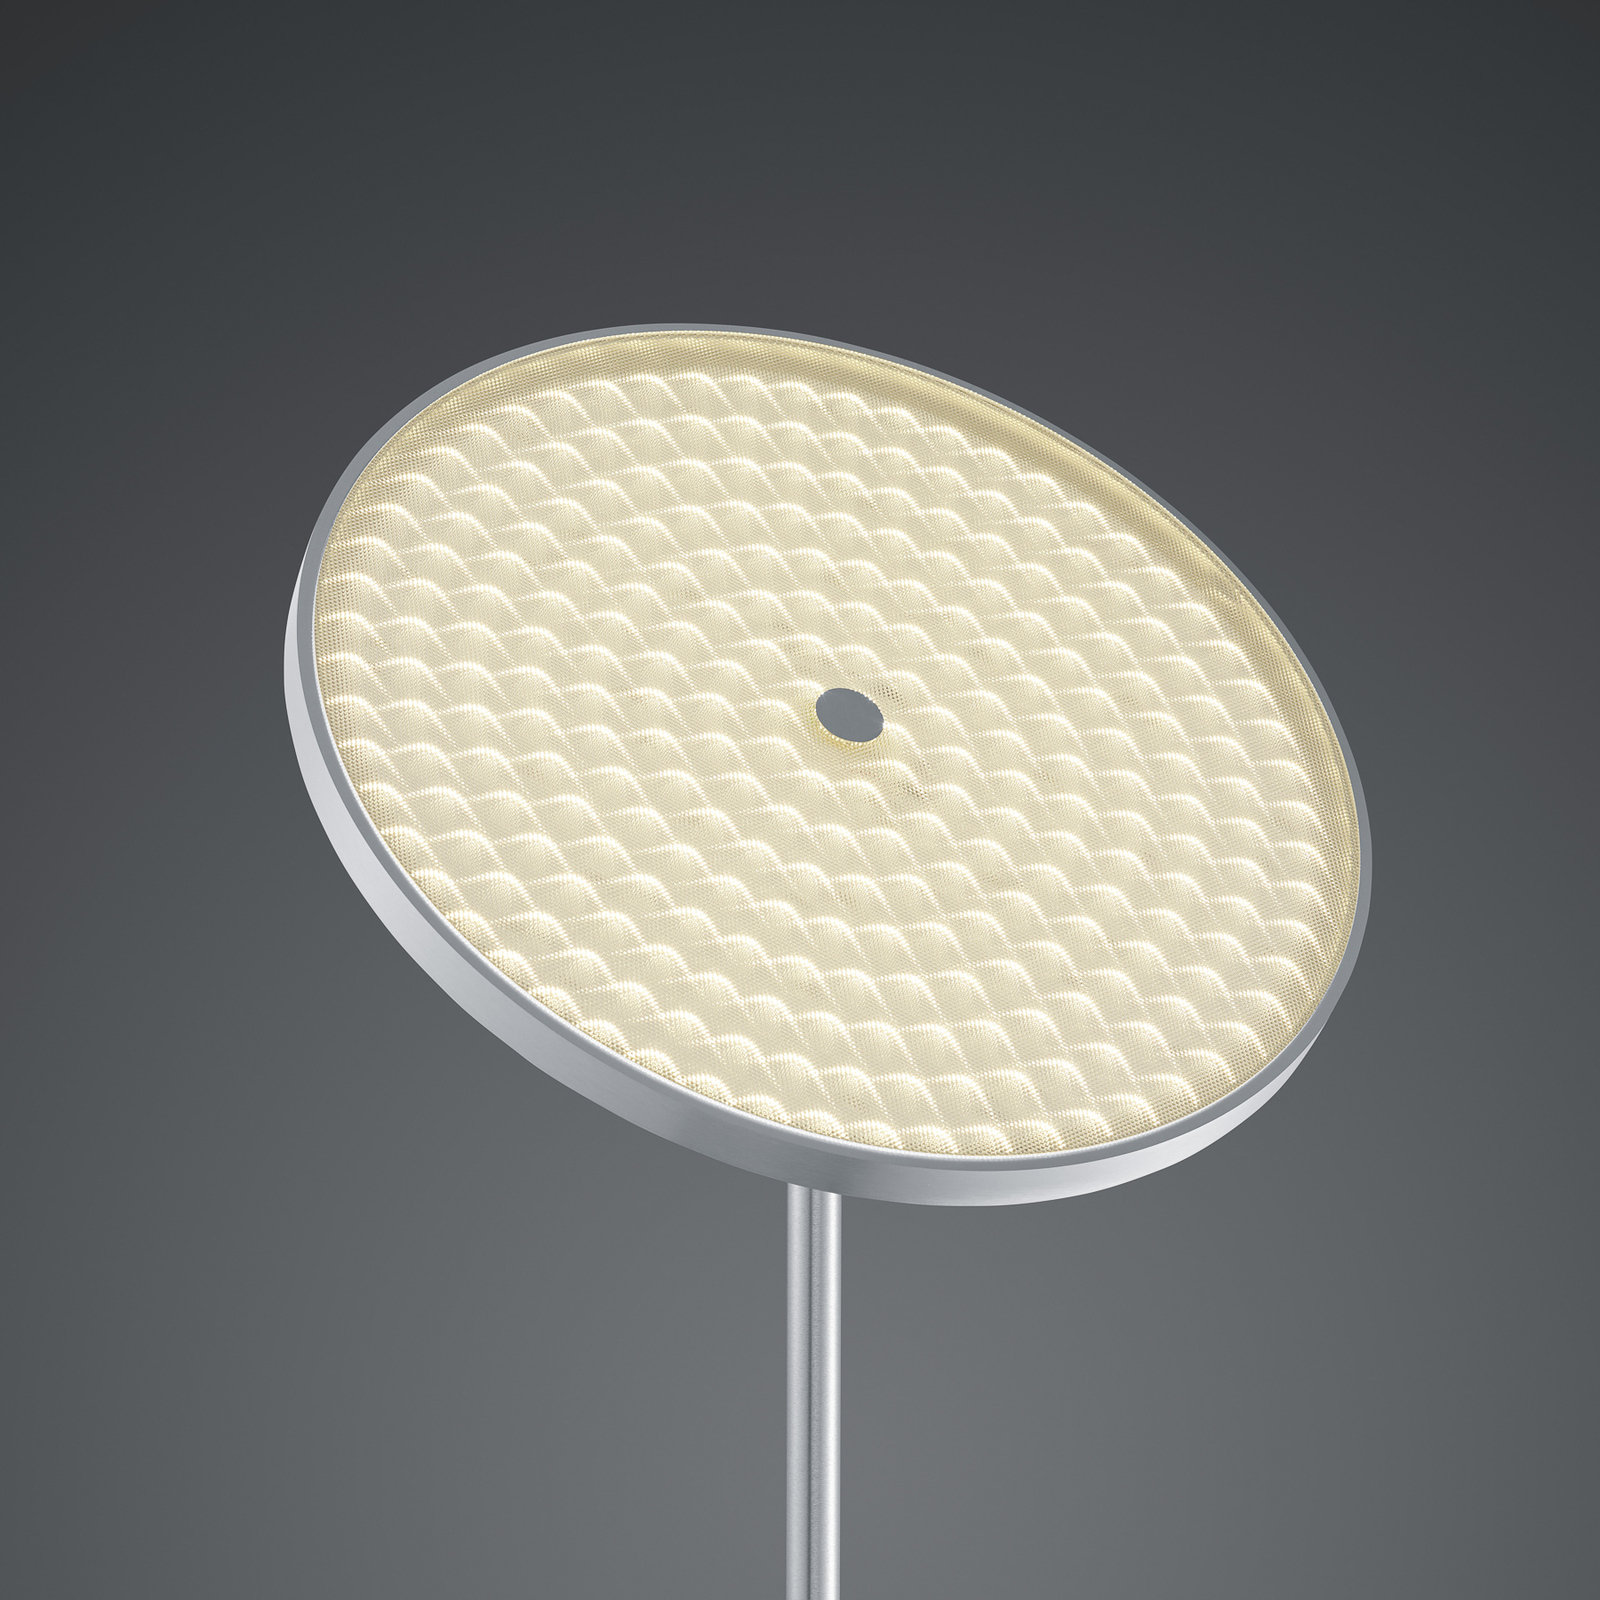 BANKAMP Solid lampadar LED cu variator nichel/crom